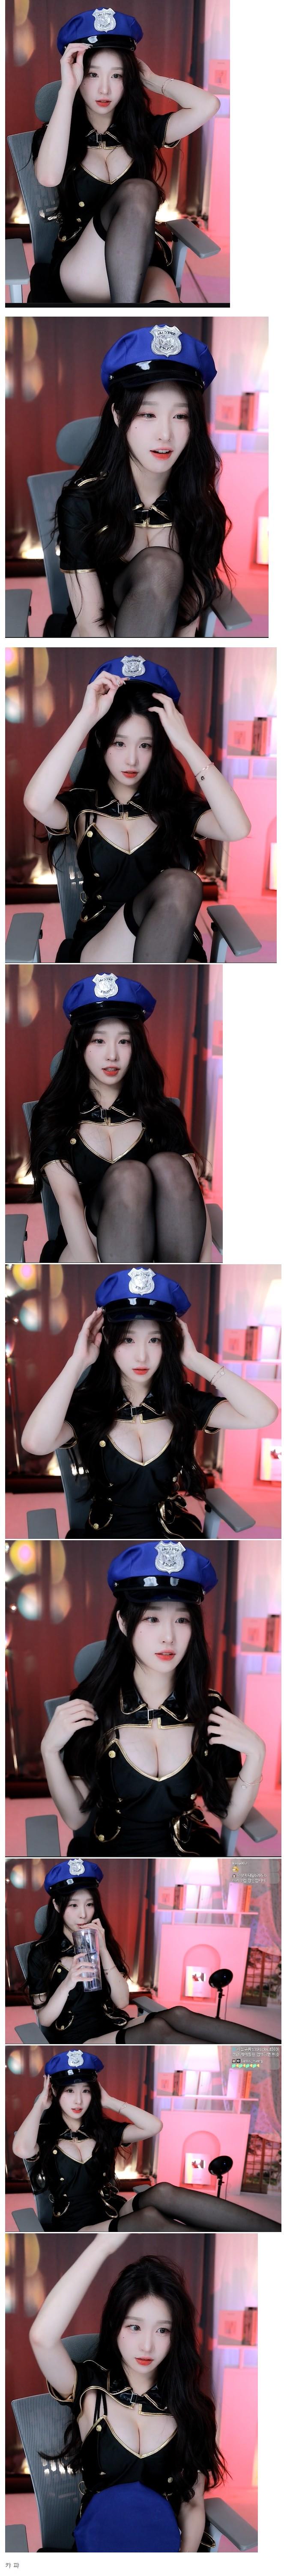 婦人警官の帽子をかぶったハンギャン果敢なミッドオープン。